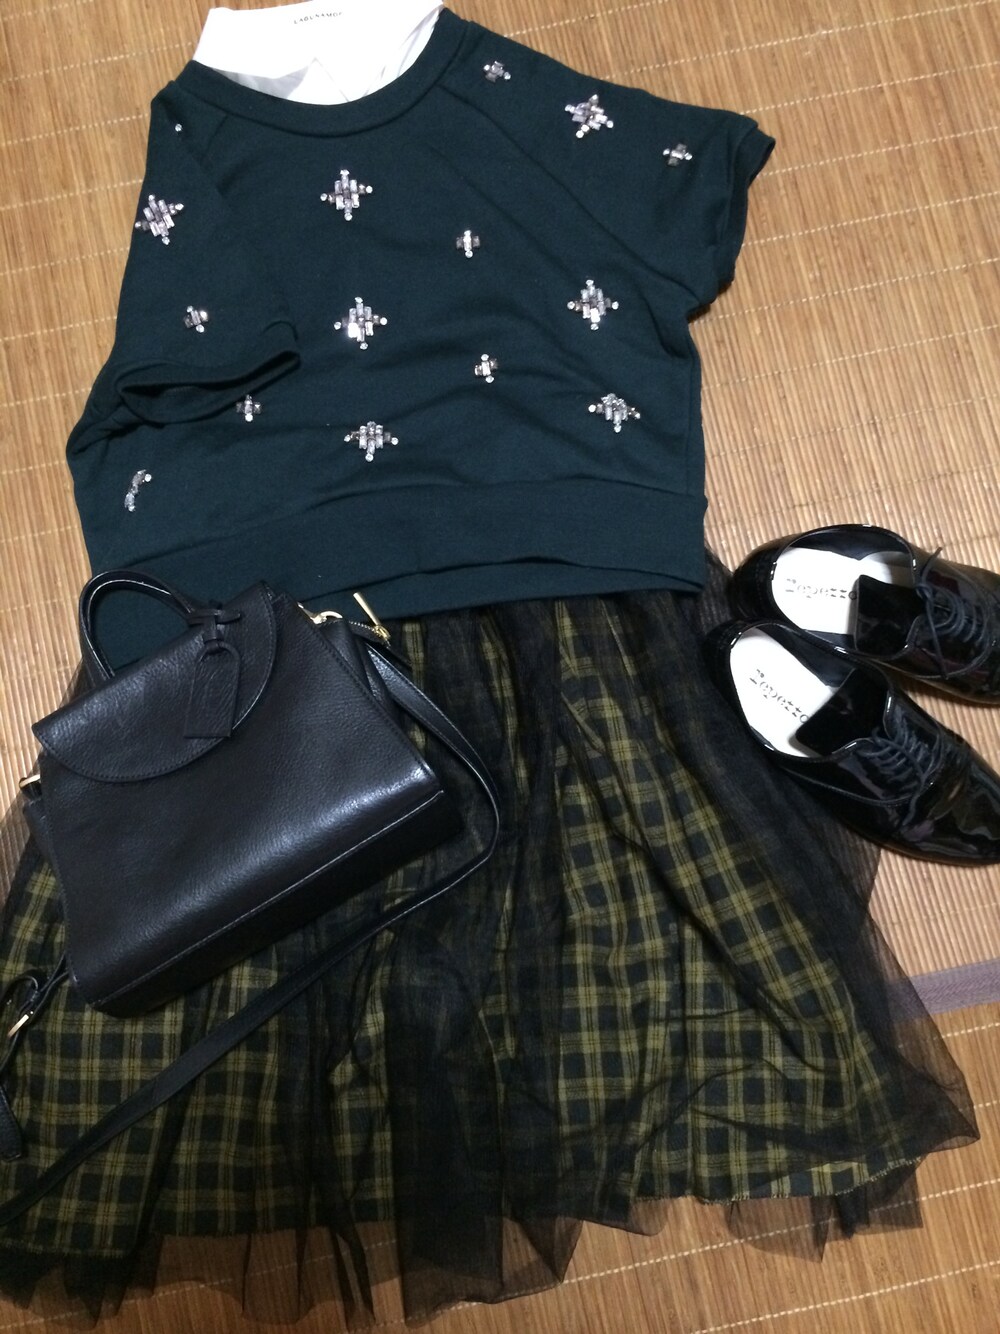 yuri17さんの「トップス   LAGUNAMOON

つけ襟   LAGUNAMOON

スカート  TODAYFUL

シューズ   repetto

バッグ   KATE SPADE  SATURDAY（TODAYFUL）」を使ったコーディネートの1枚目の写真